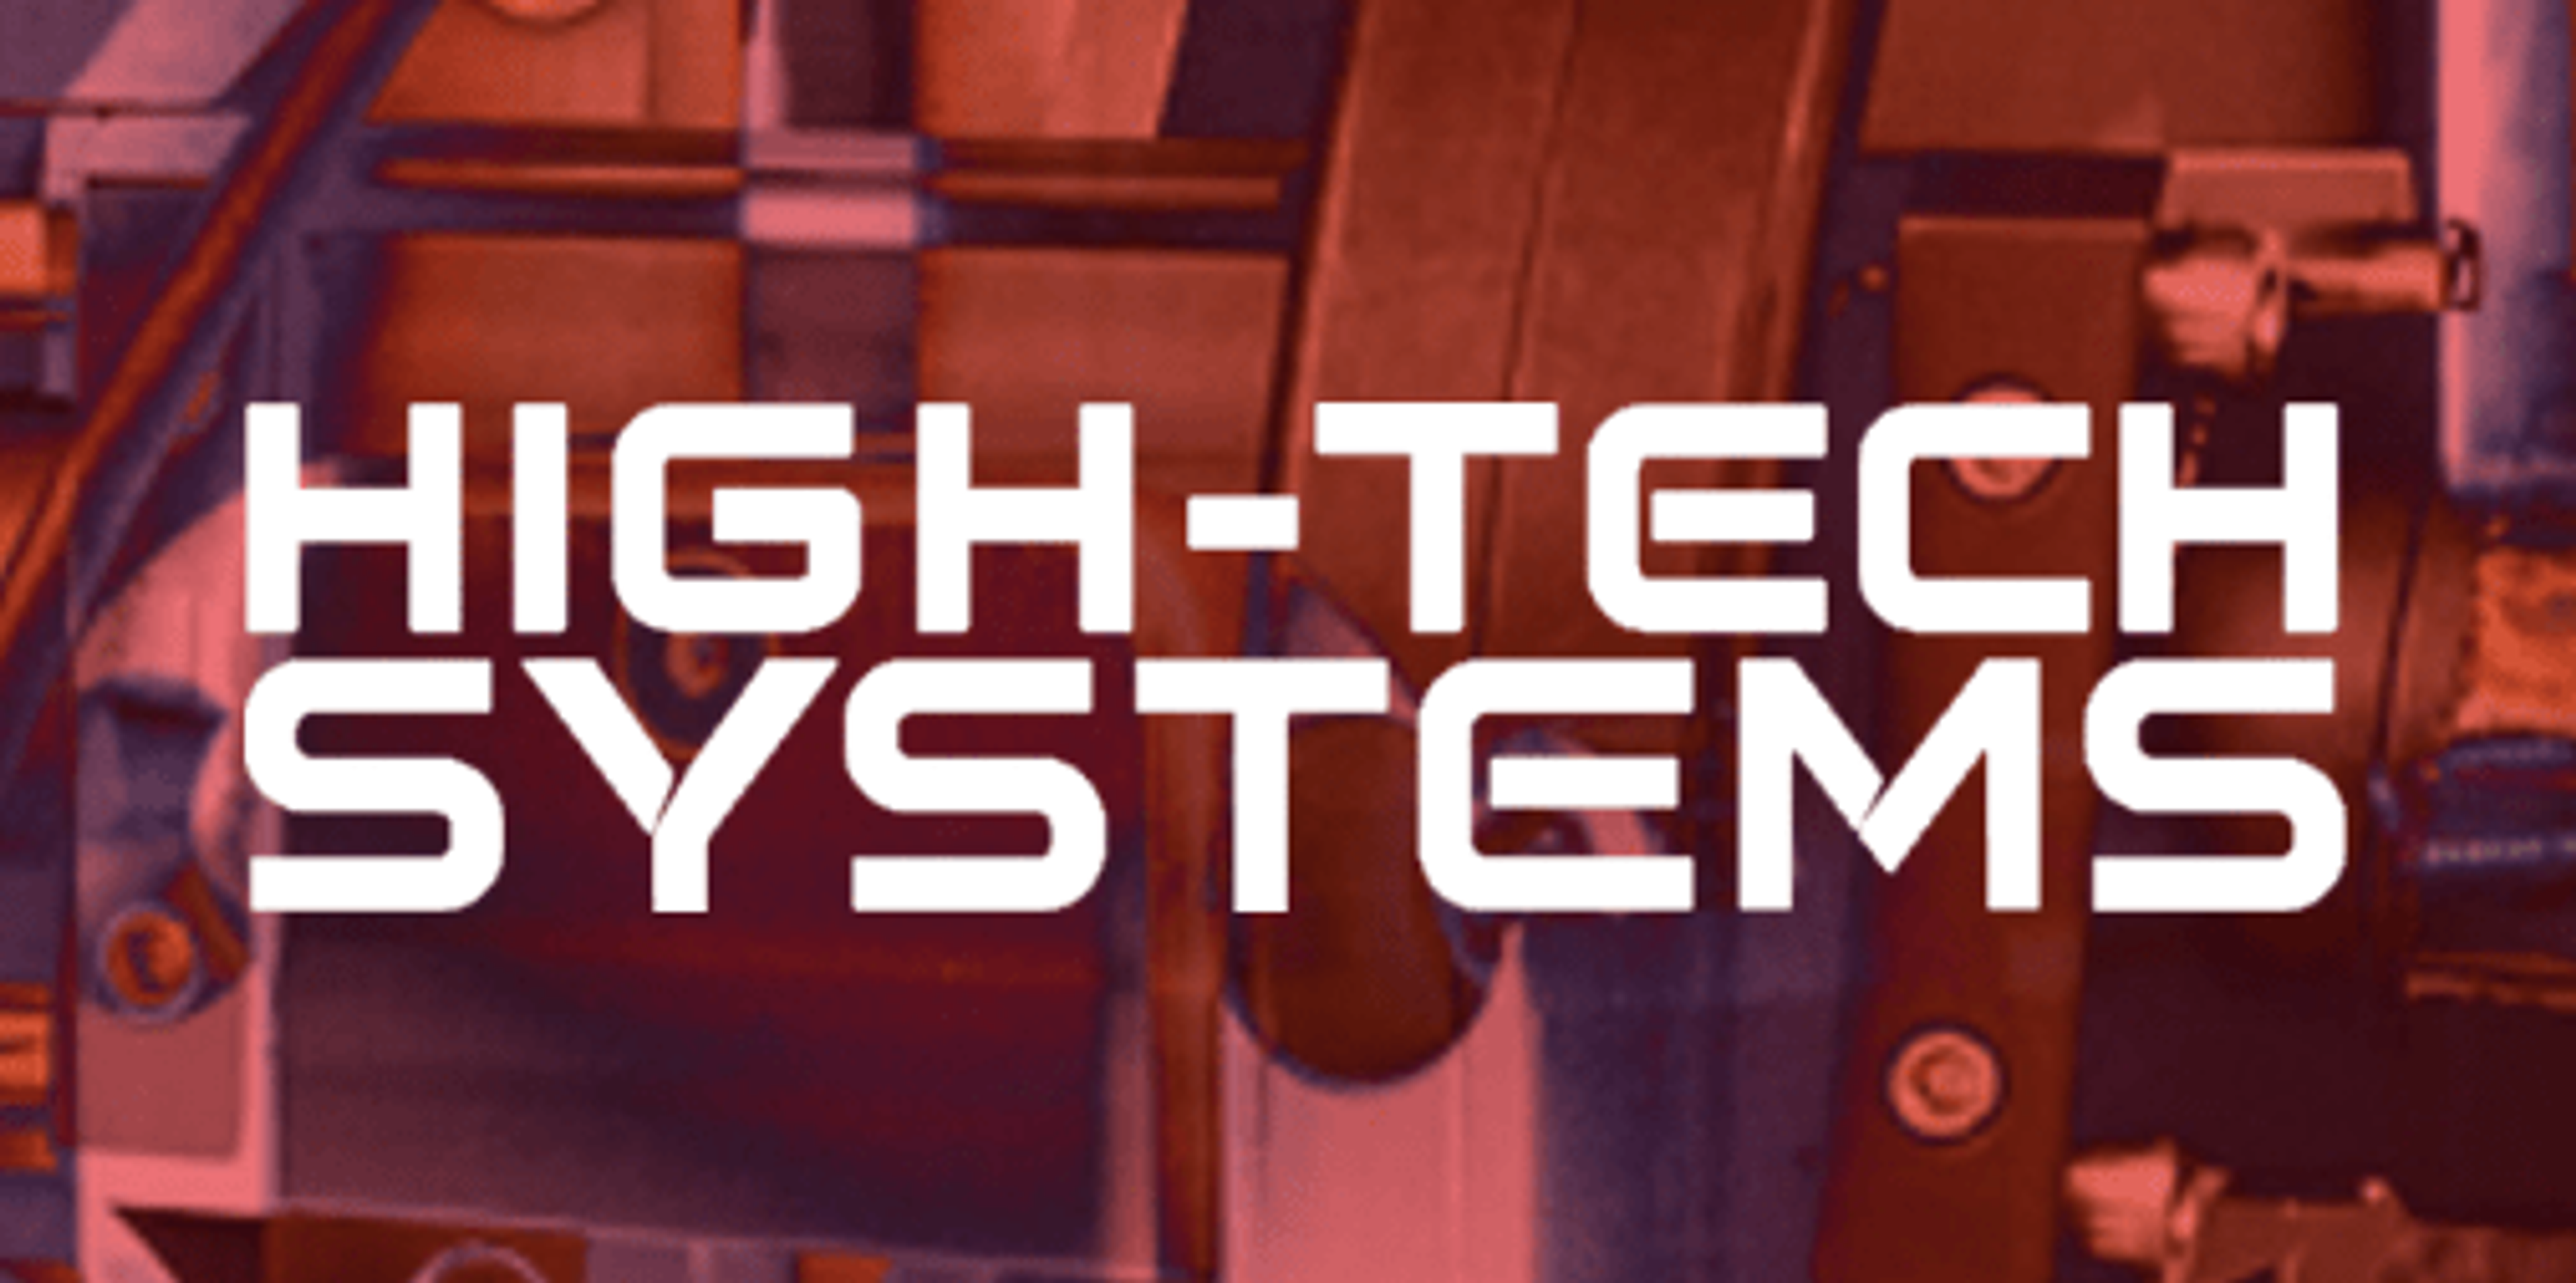 High-Tech Systems, de nieuwe naam voor Mechatronica&Machinebouw